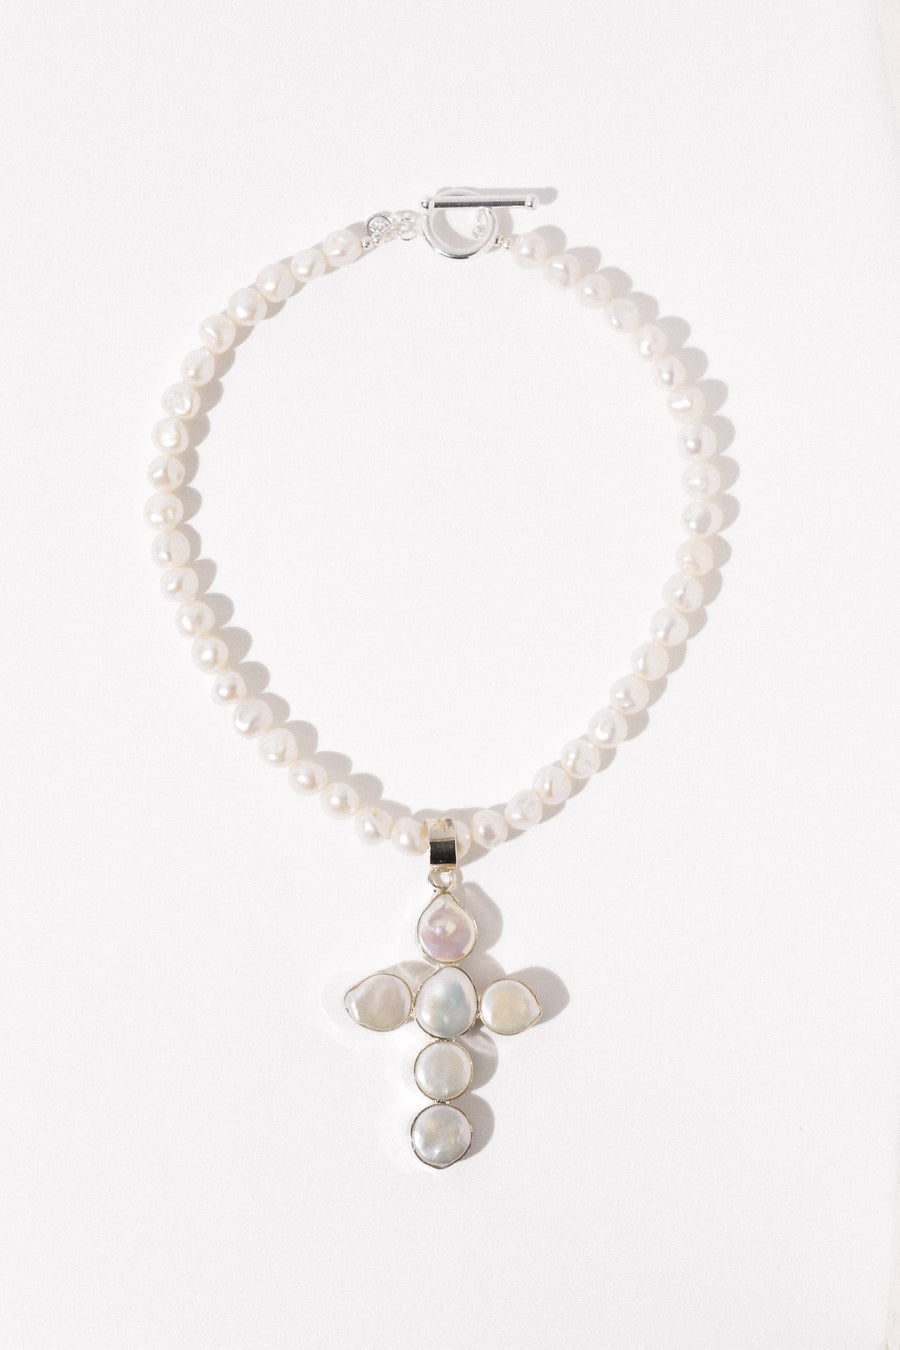 Dona Italia Jewelry Gold Ursula Pearl Necklace